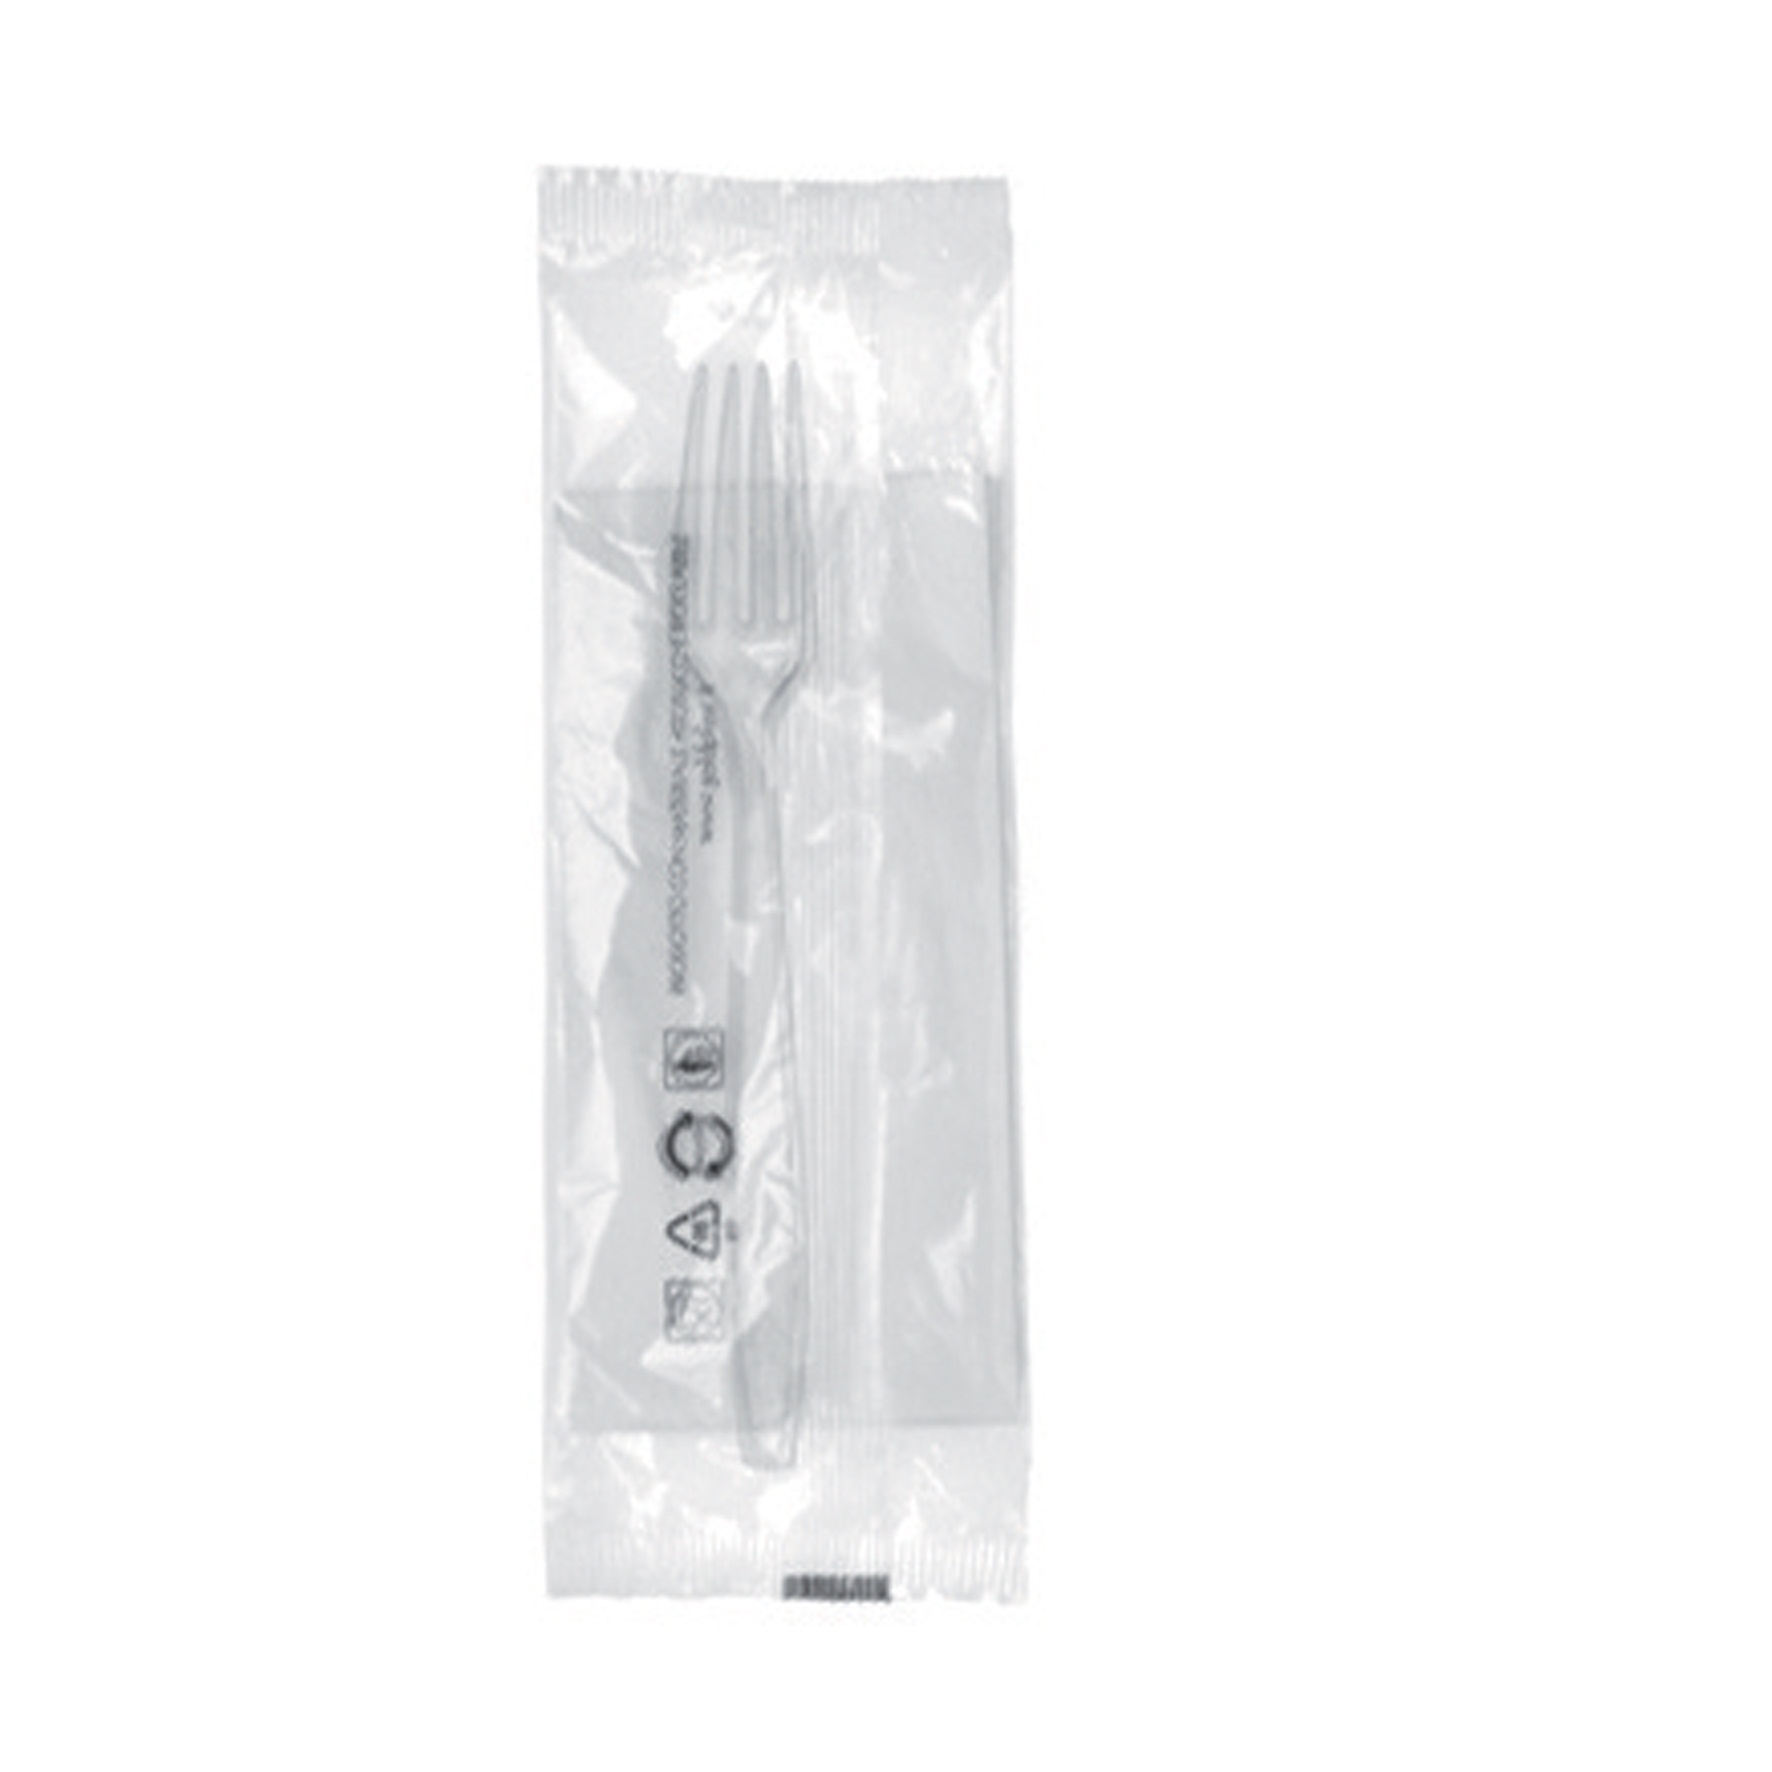 Besteckset Gabel glasklar Serviette 1-lagig, 33x33cm, weiss (CA300)